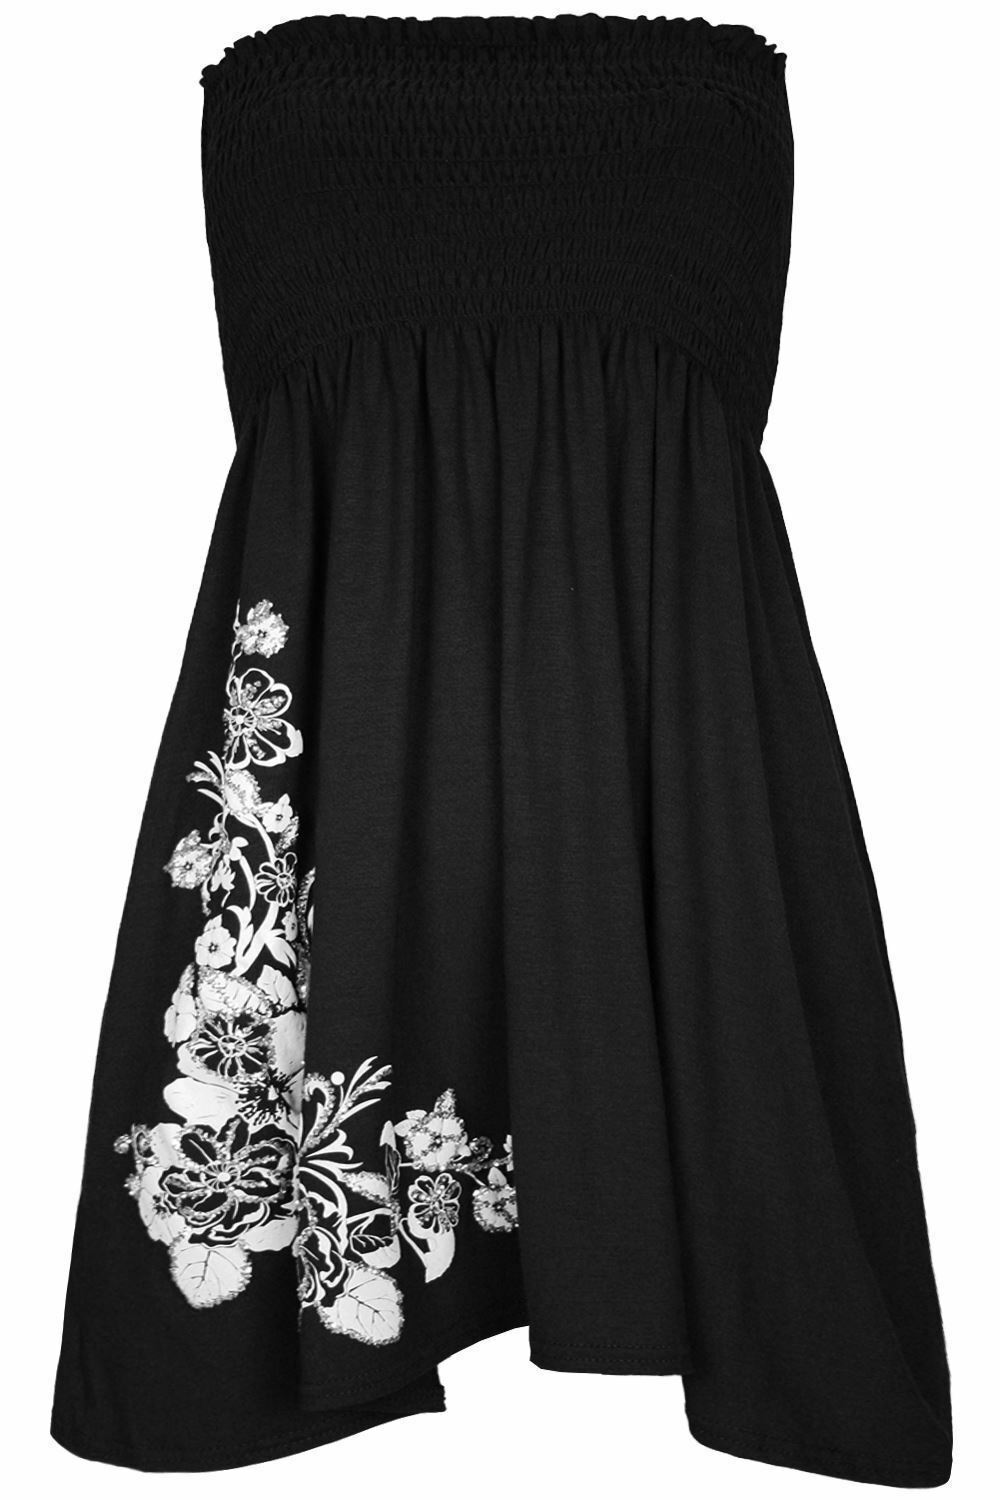 Ladies Black & White Flower Detail Boob Tube Short Style Dress.